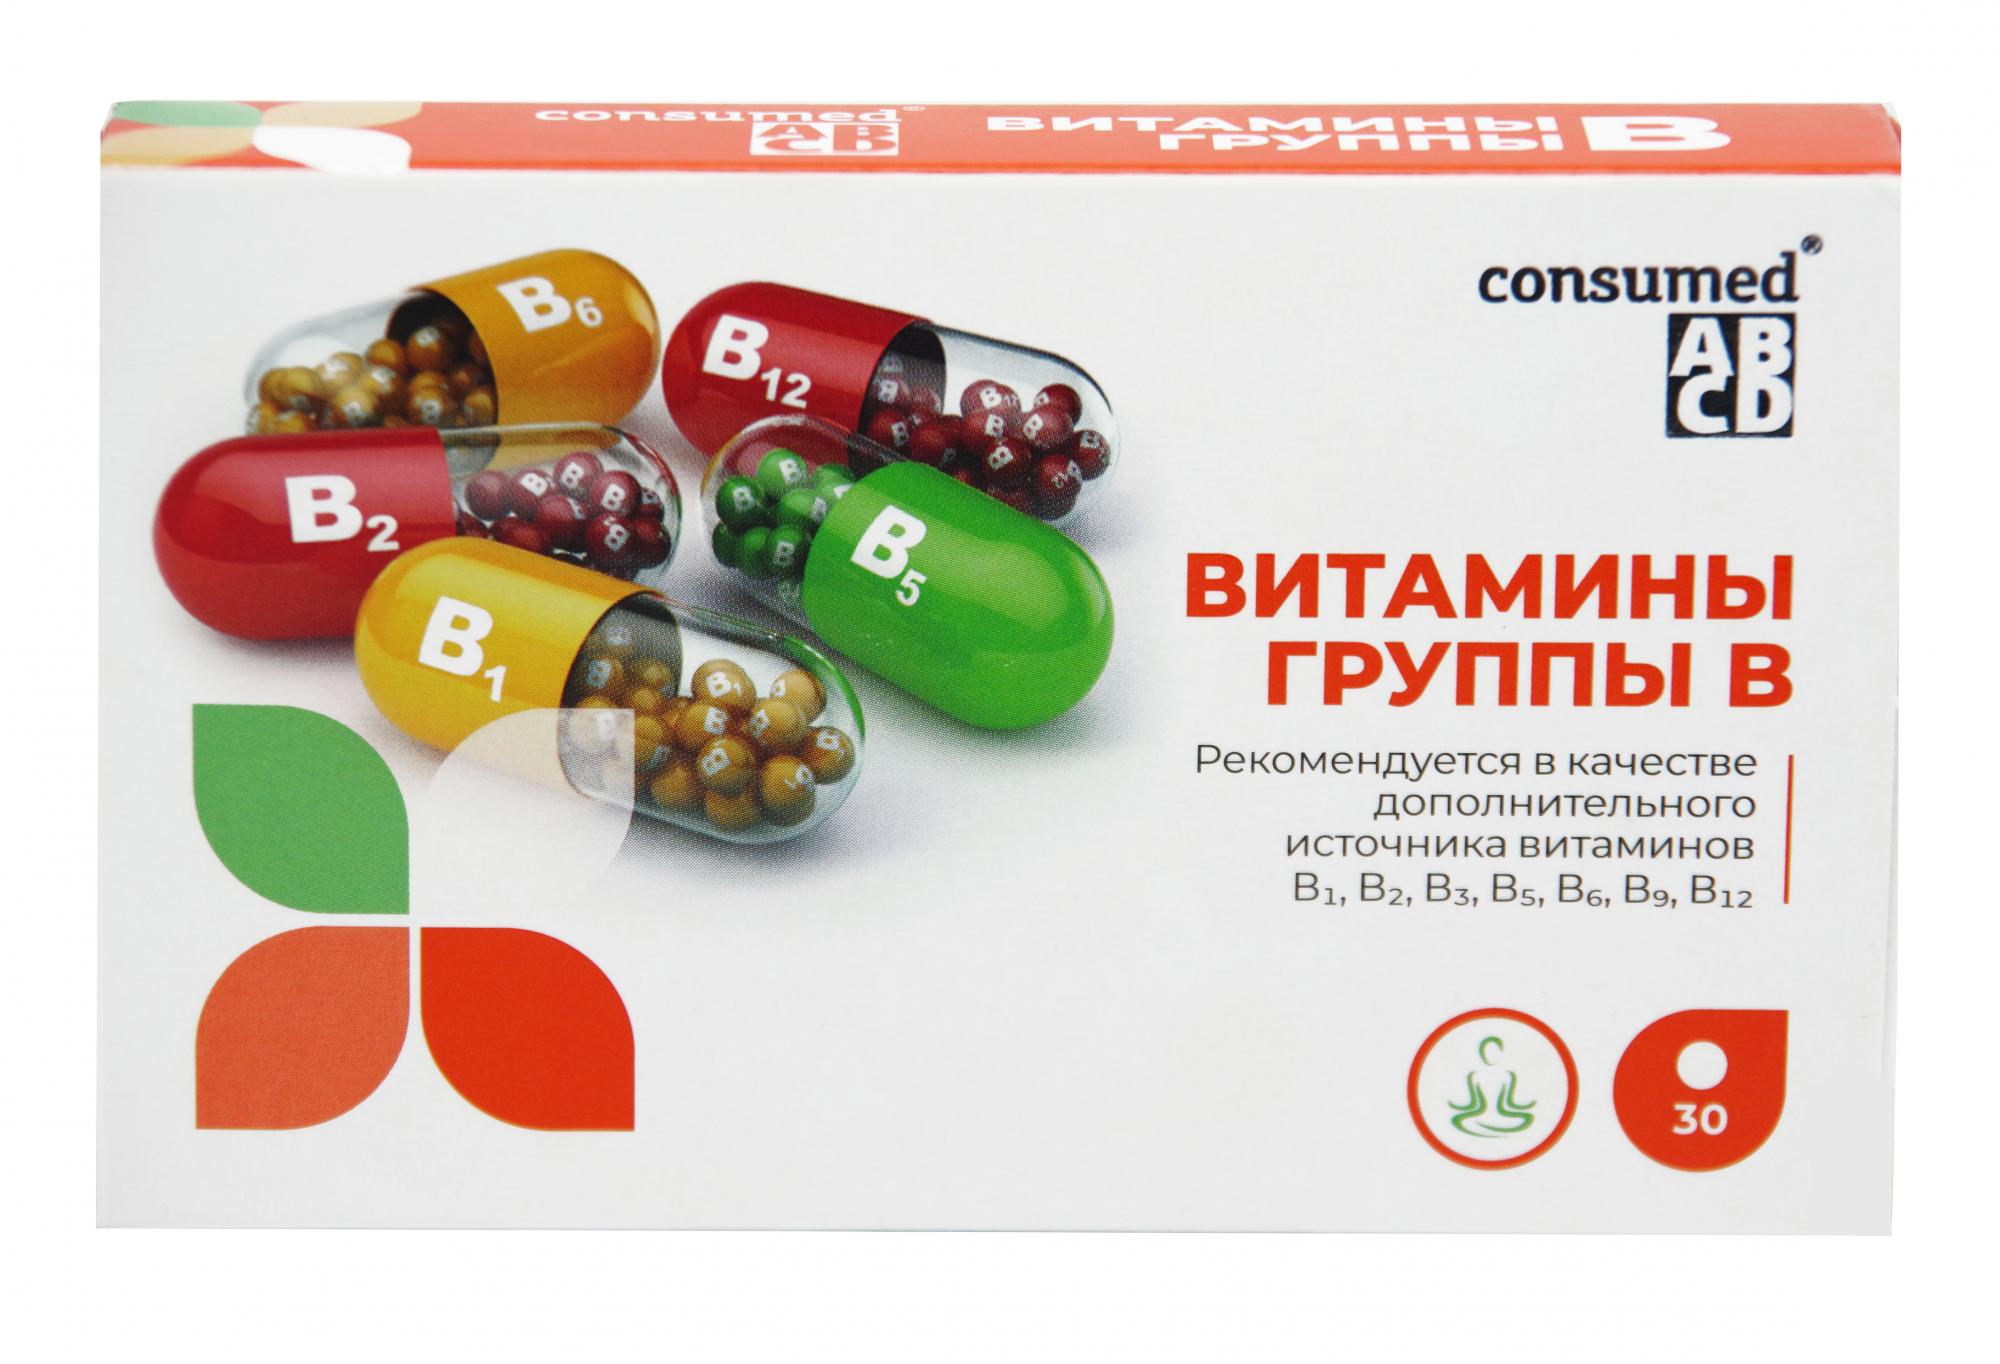 Витамин в есть в таблетках. Витамины в1 и в6 в таблетках. Витаминный комплекс b6 b12. Витамины в1 в6 в12 в таблетках. Комплекс витаминов b1 b6 b12 в капсулах.